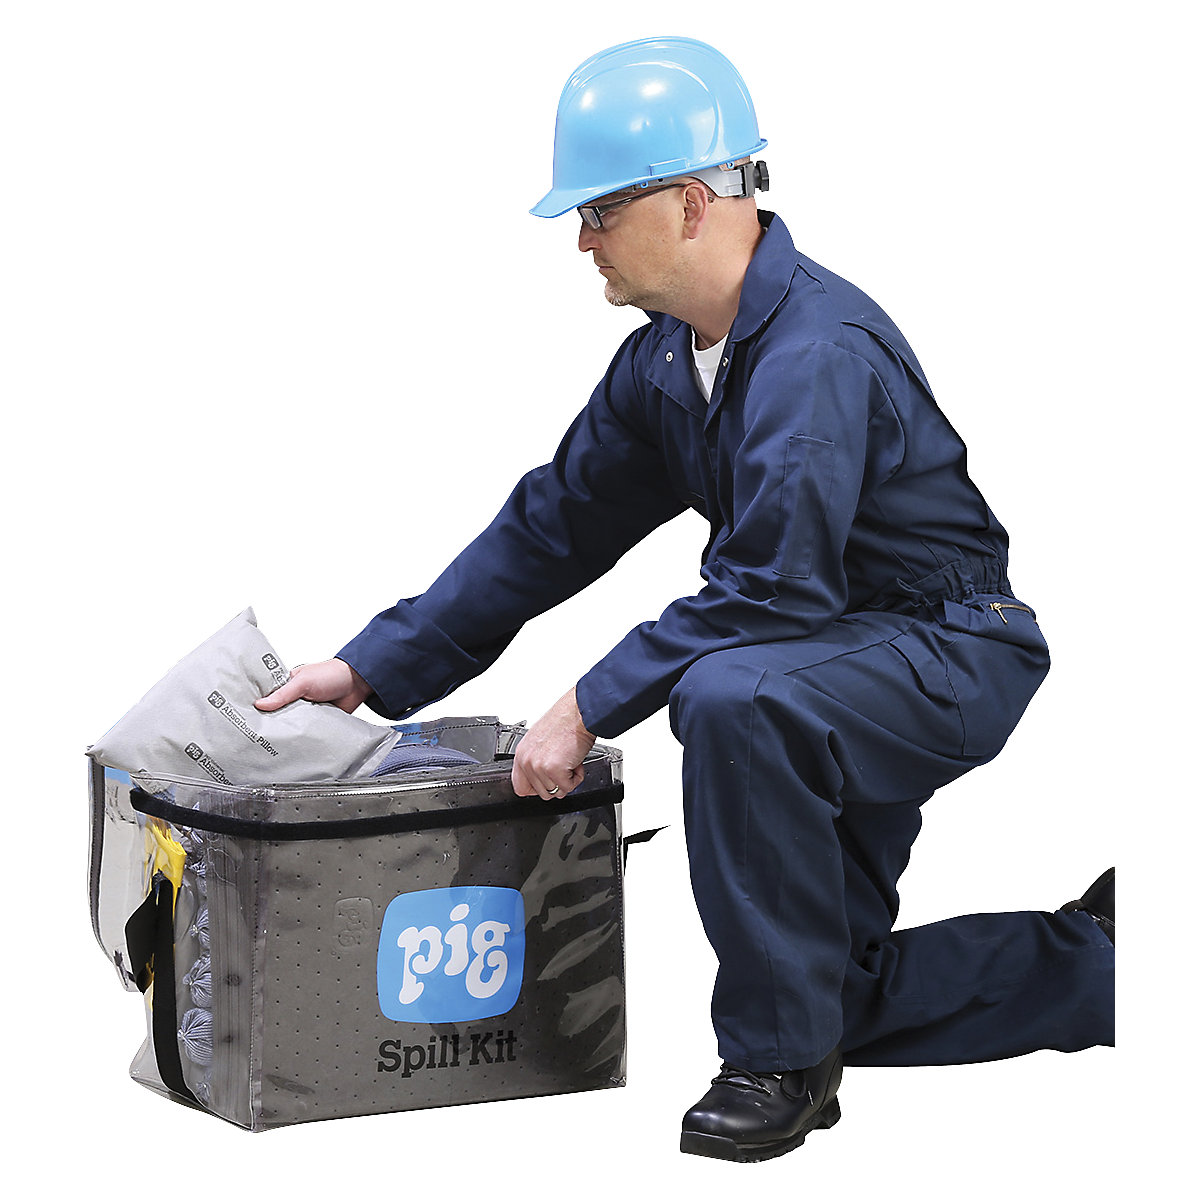 Kit di intervento in borsa trasparente – PIG (Foto prodotto 3)-2